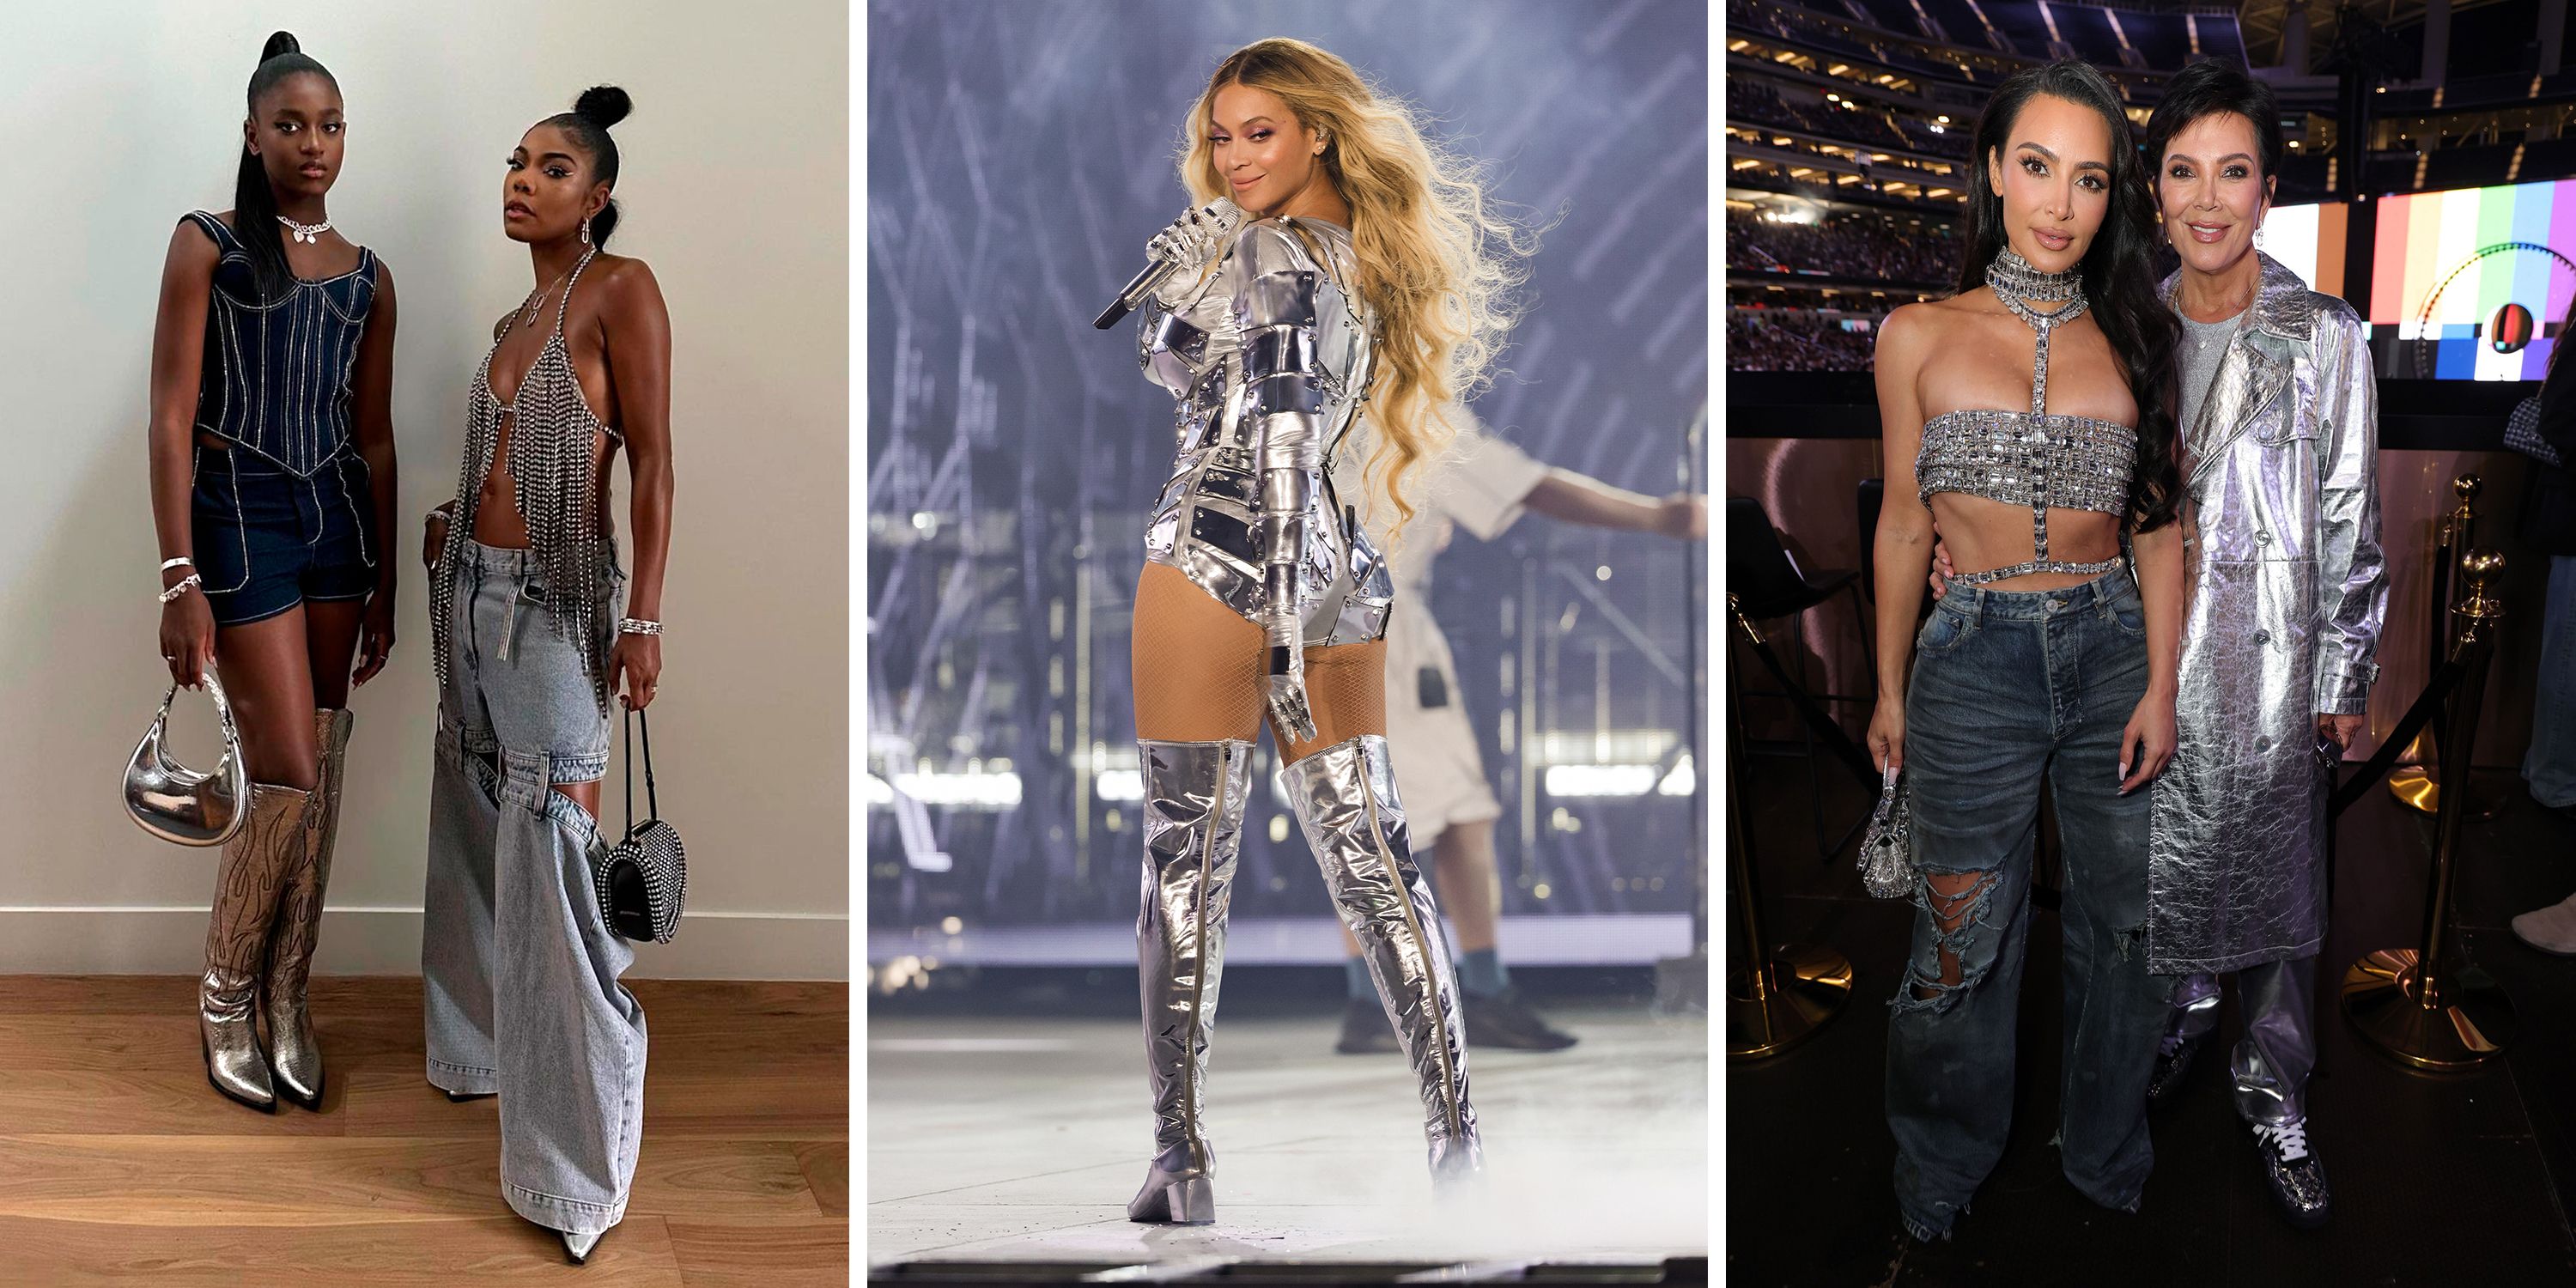 Beyonce asks fans to wear silver for final 'Renaissance' tour dates